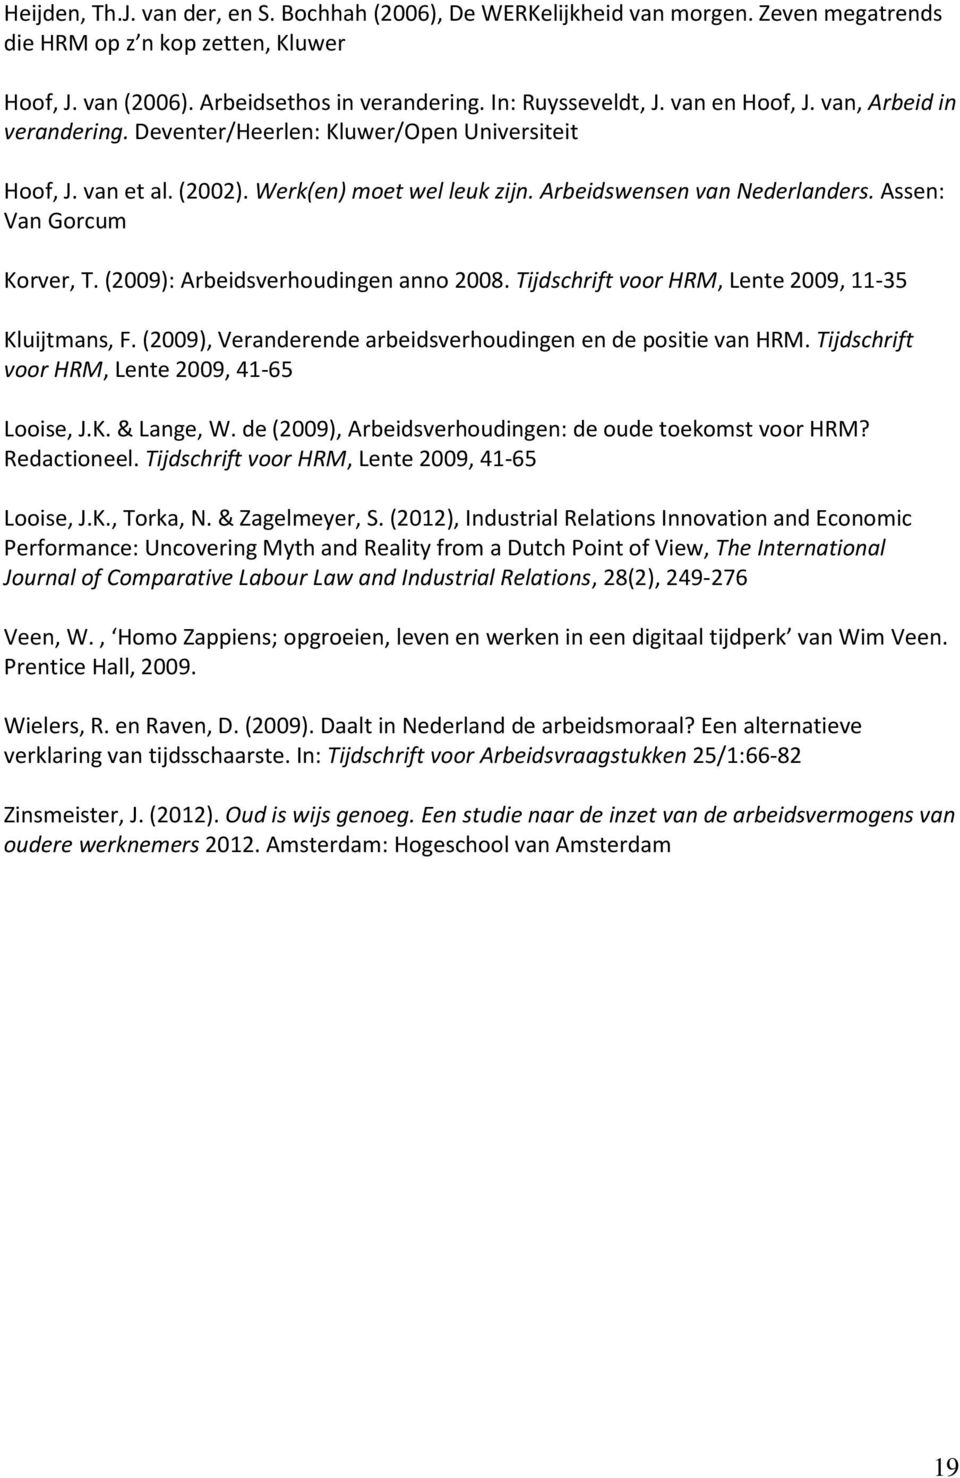 Assen: Van Gorcum Korver, T. (2009): Arbeidsverhoudingen anno 2008. Tijdschrift voor HRM, Lente 2009, 11-35 Kluijtmans, F. (2009), Veranderende arbeidsverhoudingen en de positie van HRM.